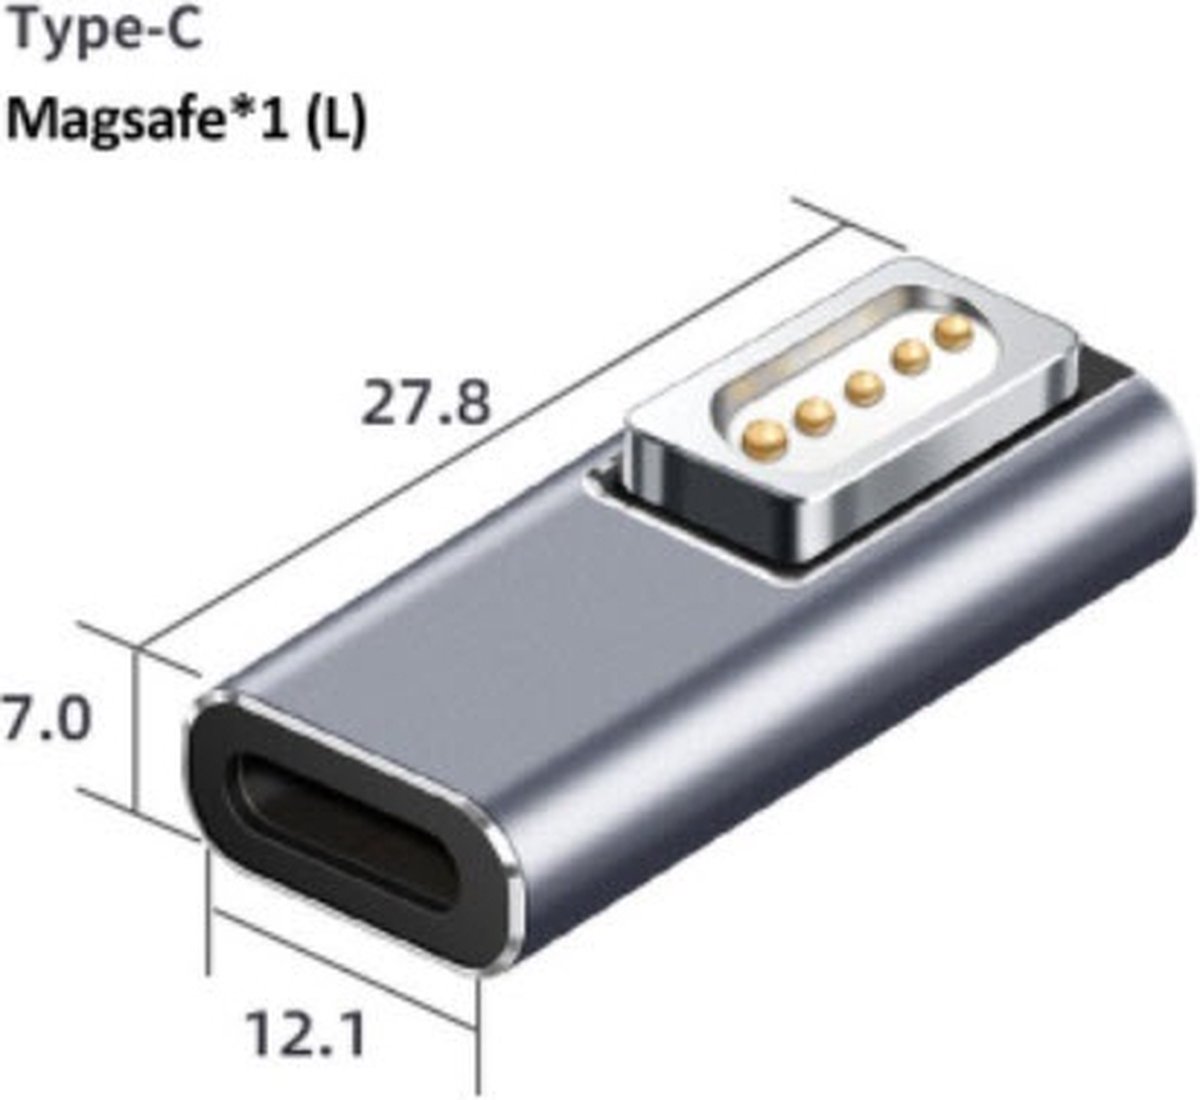 Magnetische PD-adapter voor Macbook Air - Pro - Usb Type C magnetische plug adapter voor Magsaf * 1